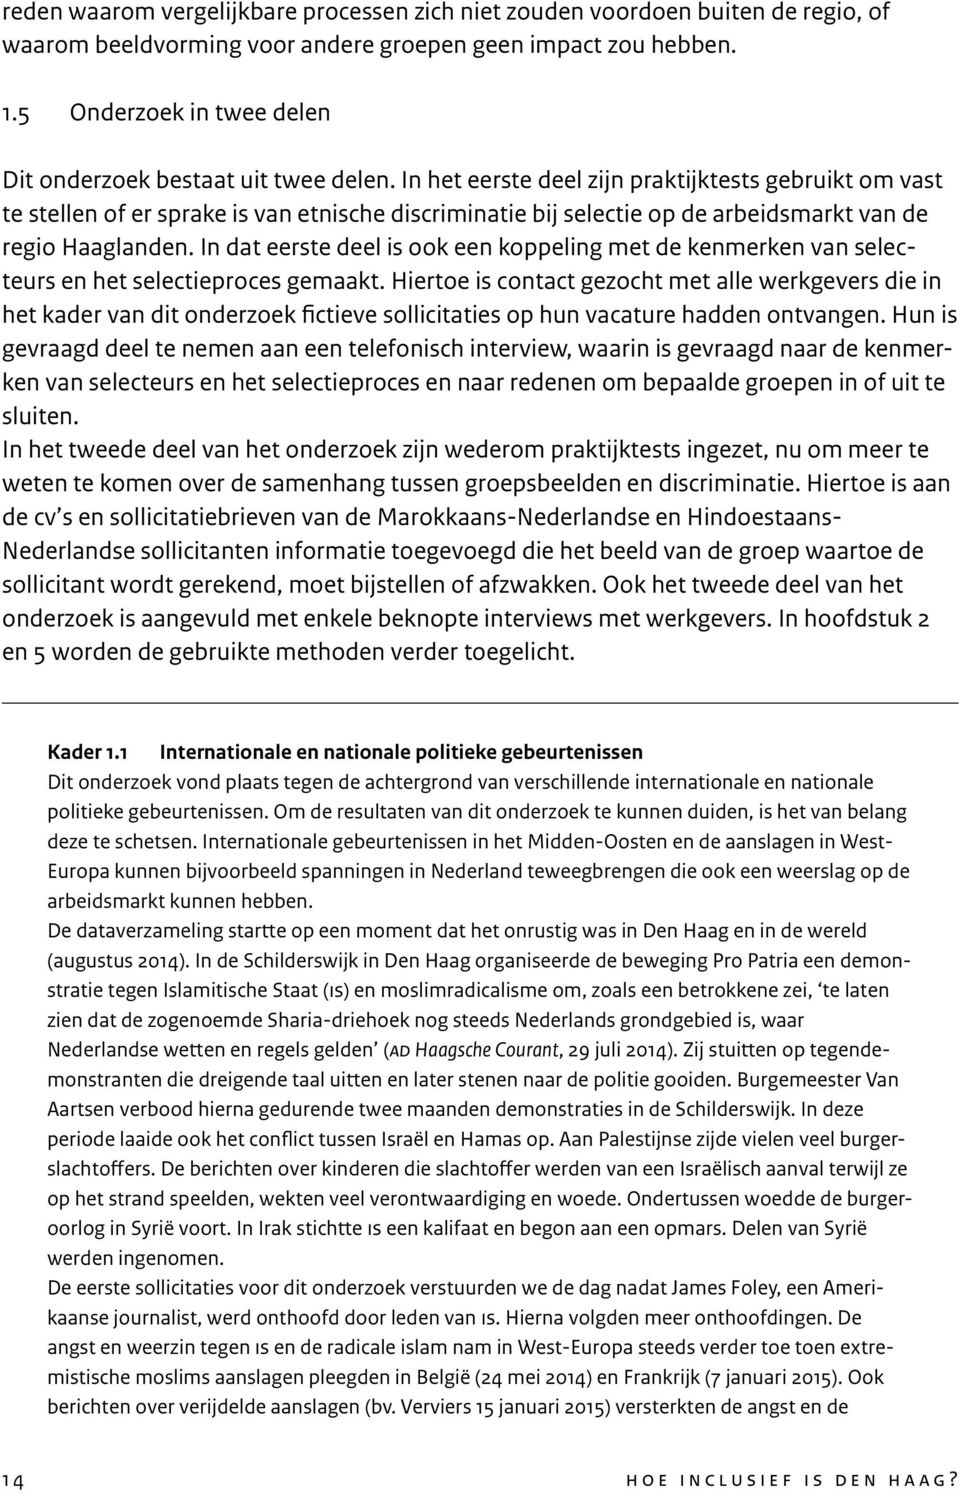 In het eerste deel zijn praktijktests gebruikt om vast te stellen of er sprake is van etnische discriminatie bij selectie op de arbeidsmarkt van de regio Haaglanden.